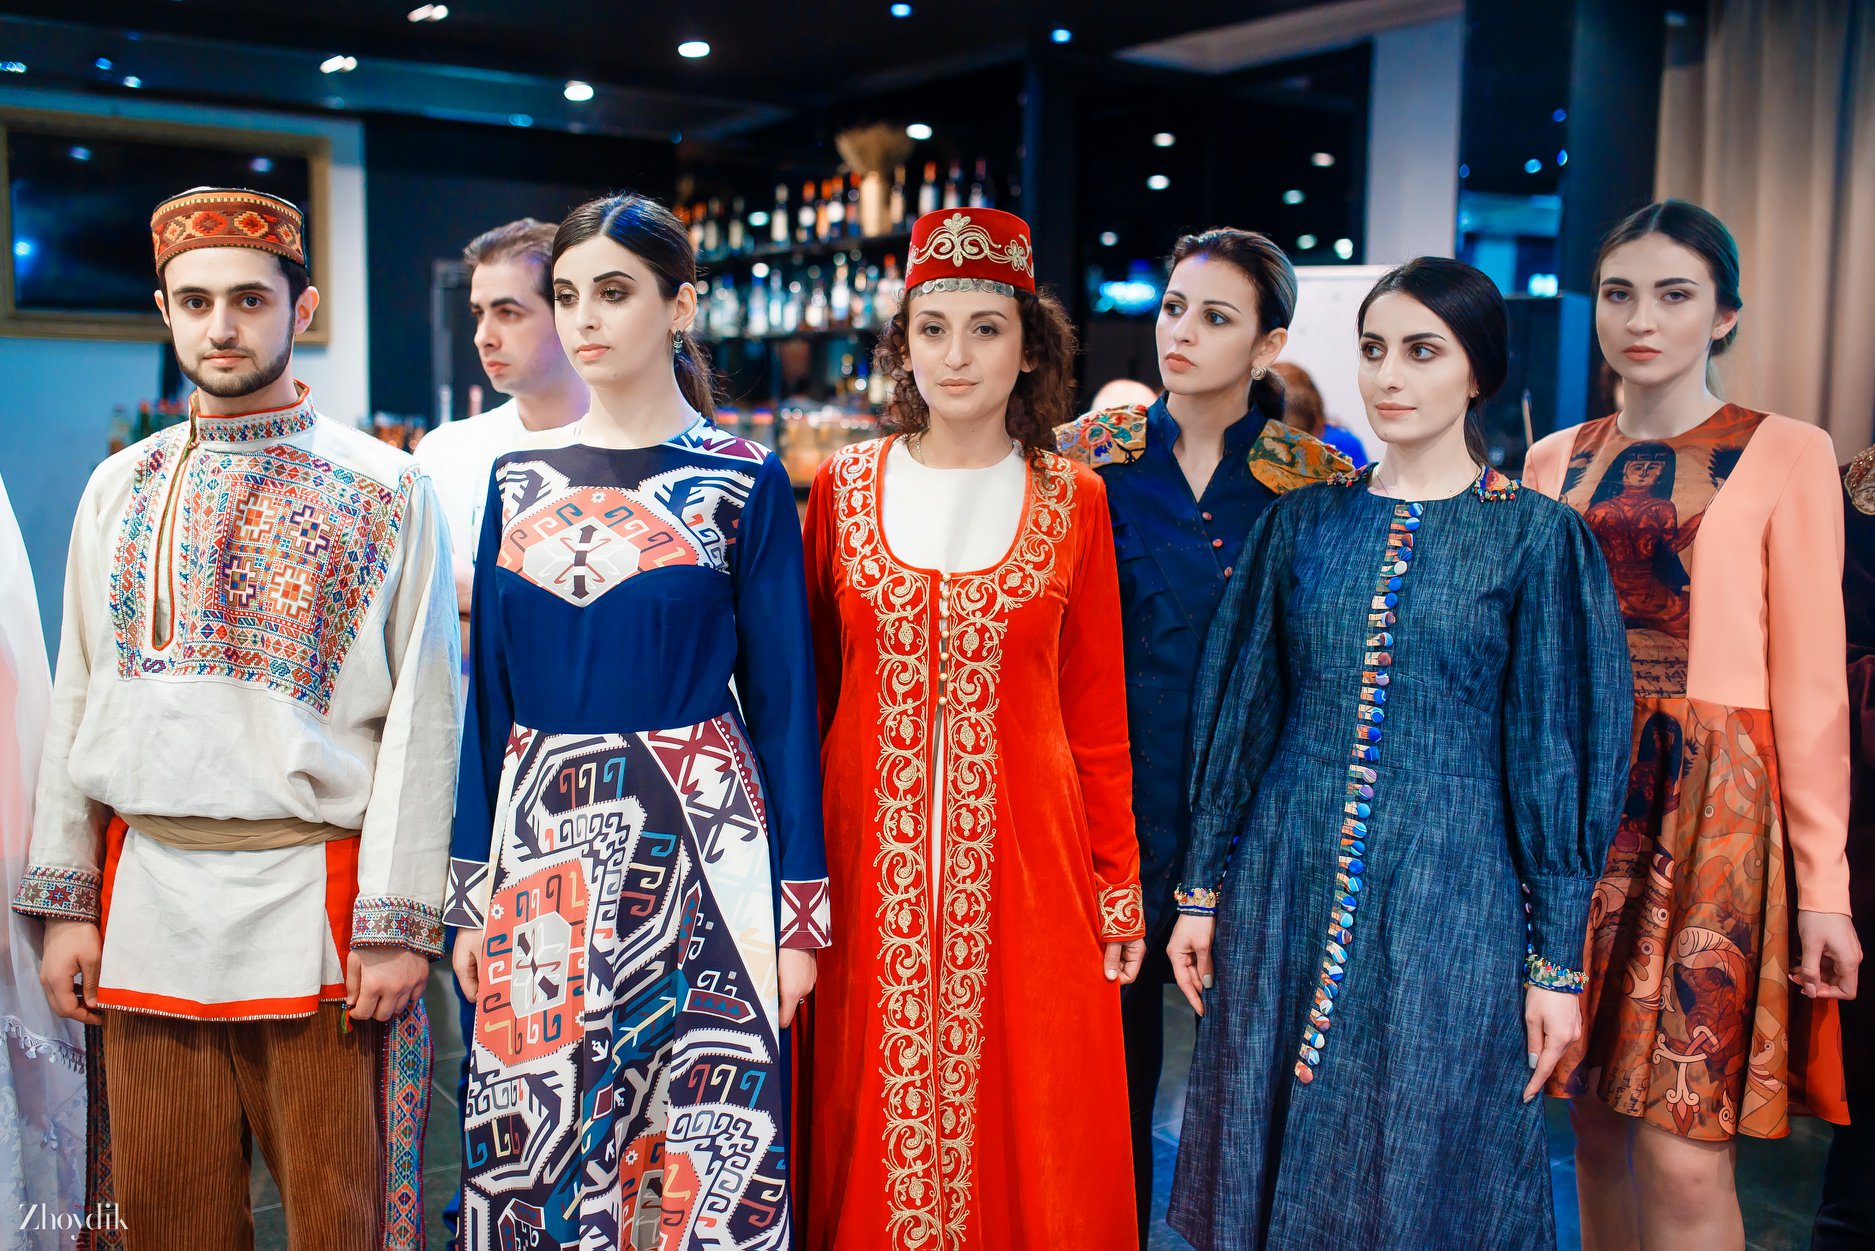 Одежда в ереване. Армянский национальный костюм. Национальная одежда армян. Национальная одежда Армении. Армянская одежда мужская.